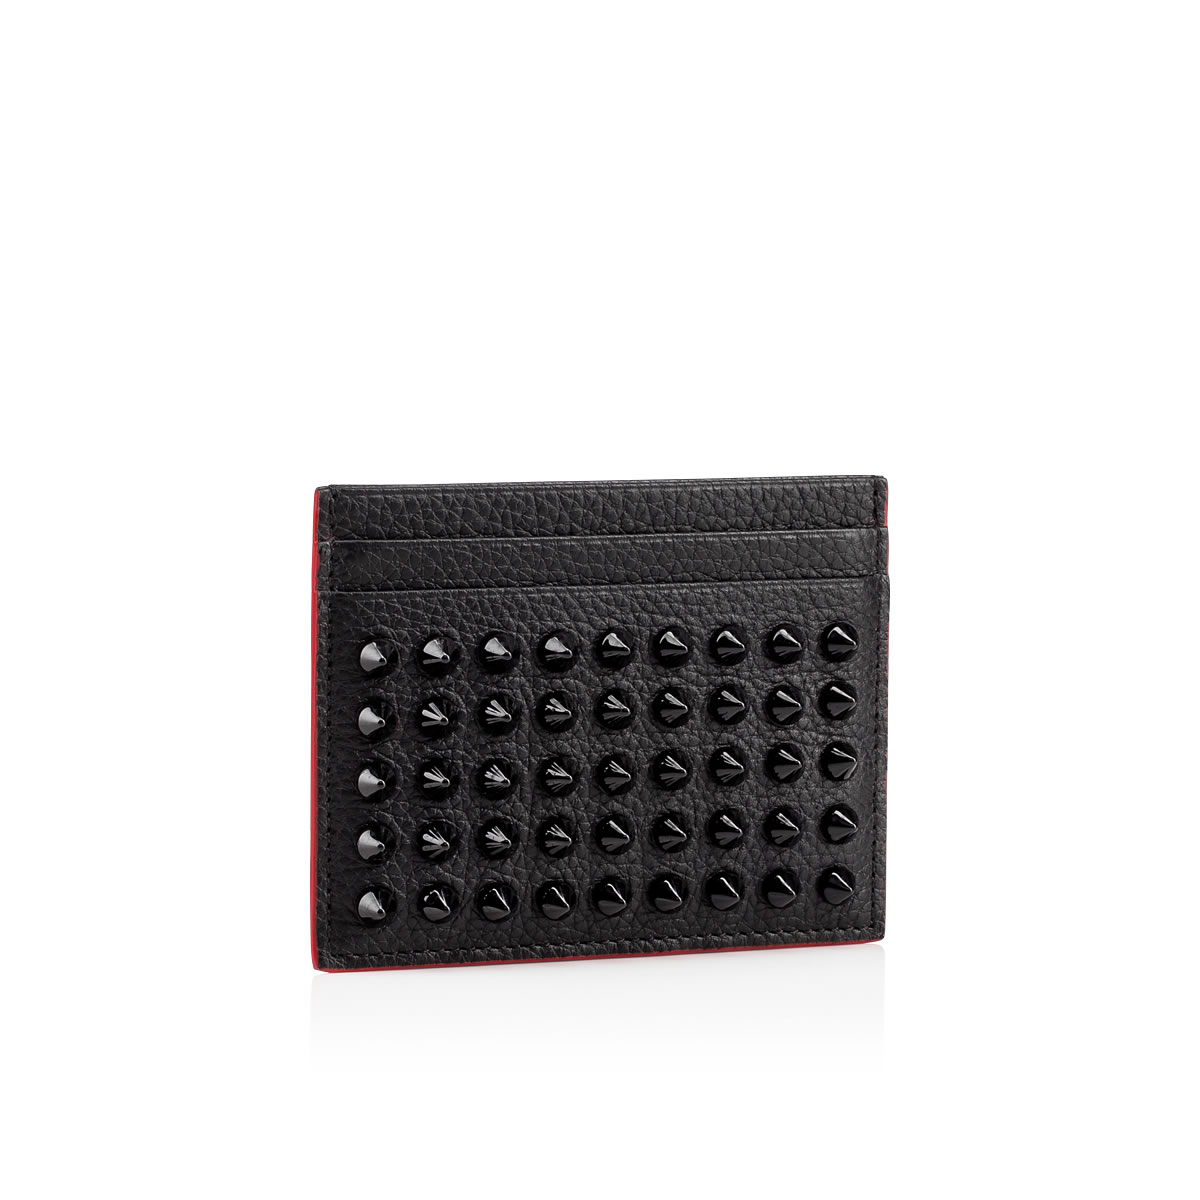 Kios - Card holder - Calf leather and spikes - Black - Christian